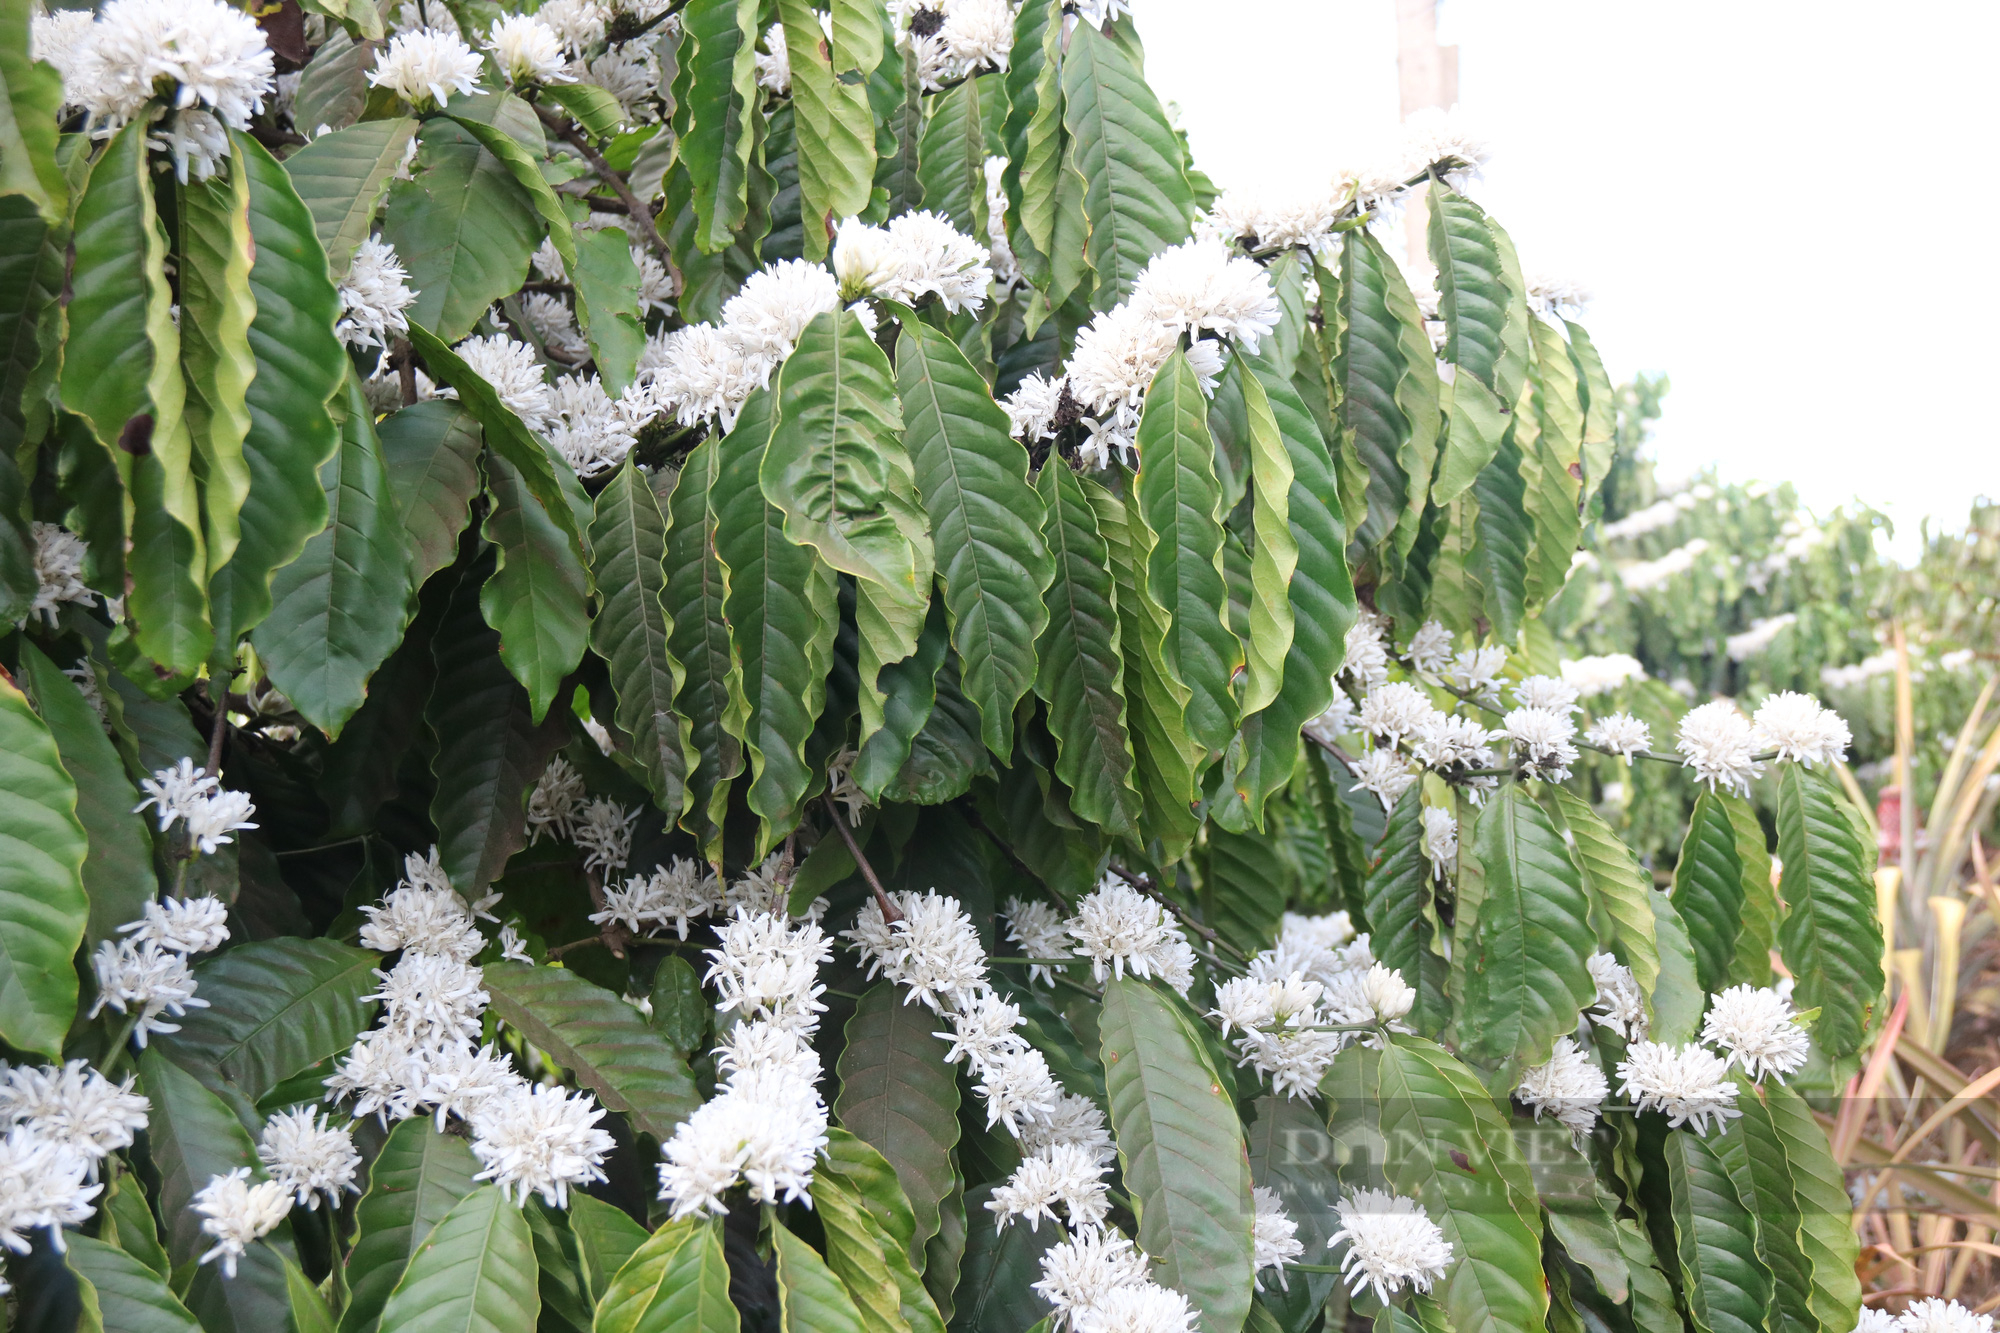 Ngắm nhìn những bông hoa cà phê nở trắng xóa giữa vùng đất Tây Nguyên - Ảnh 4.